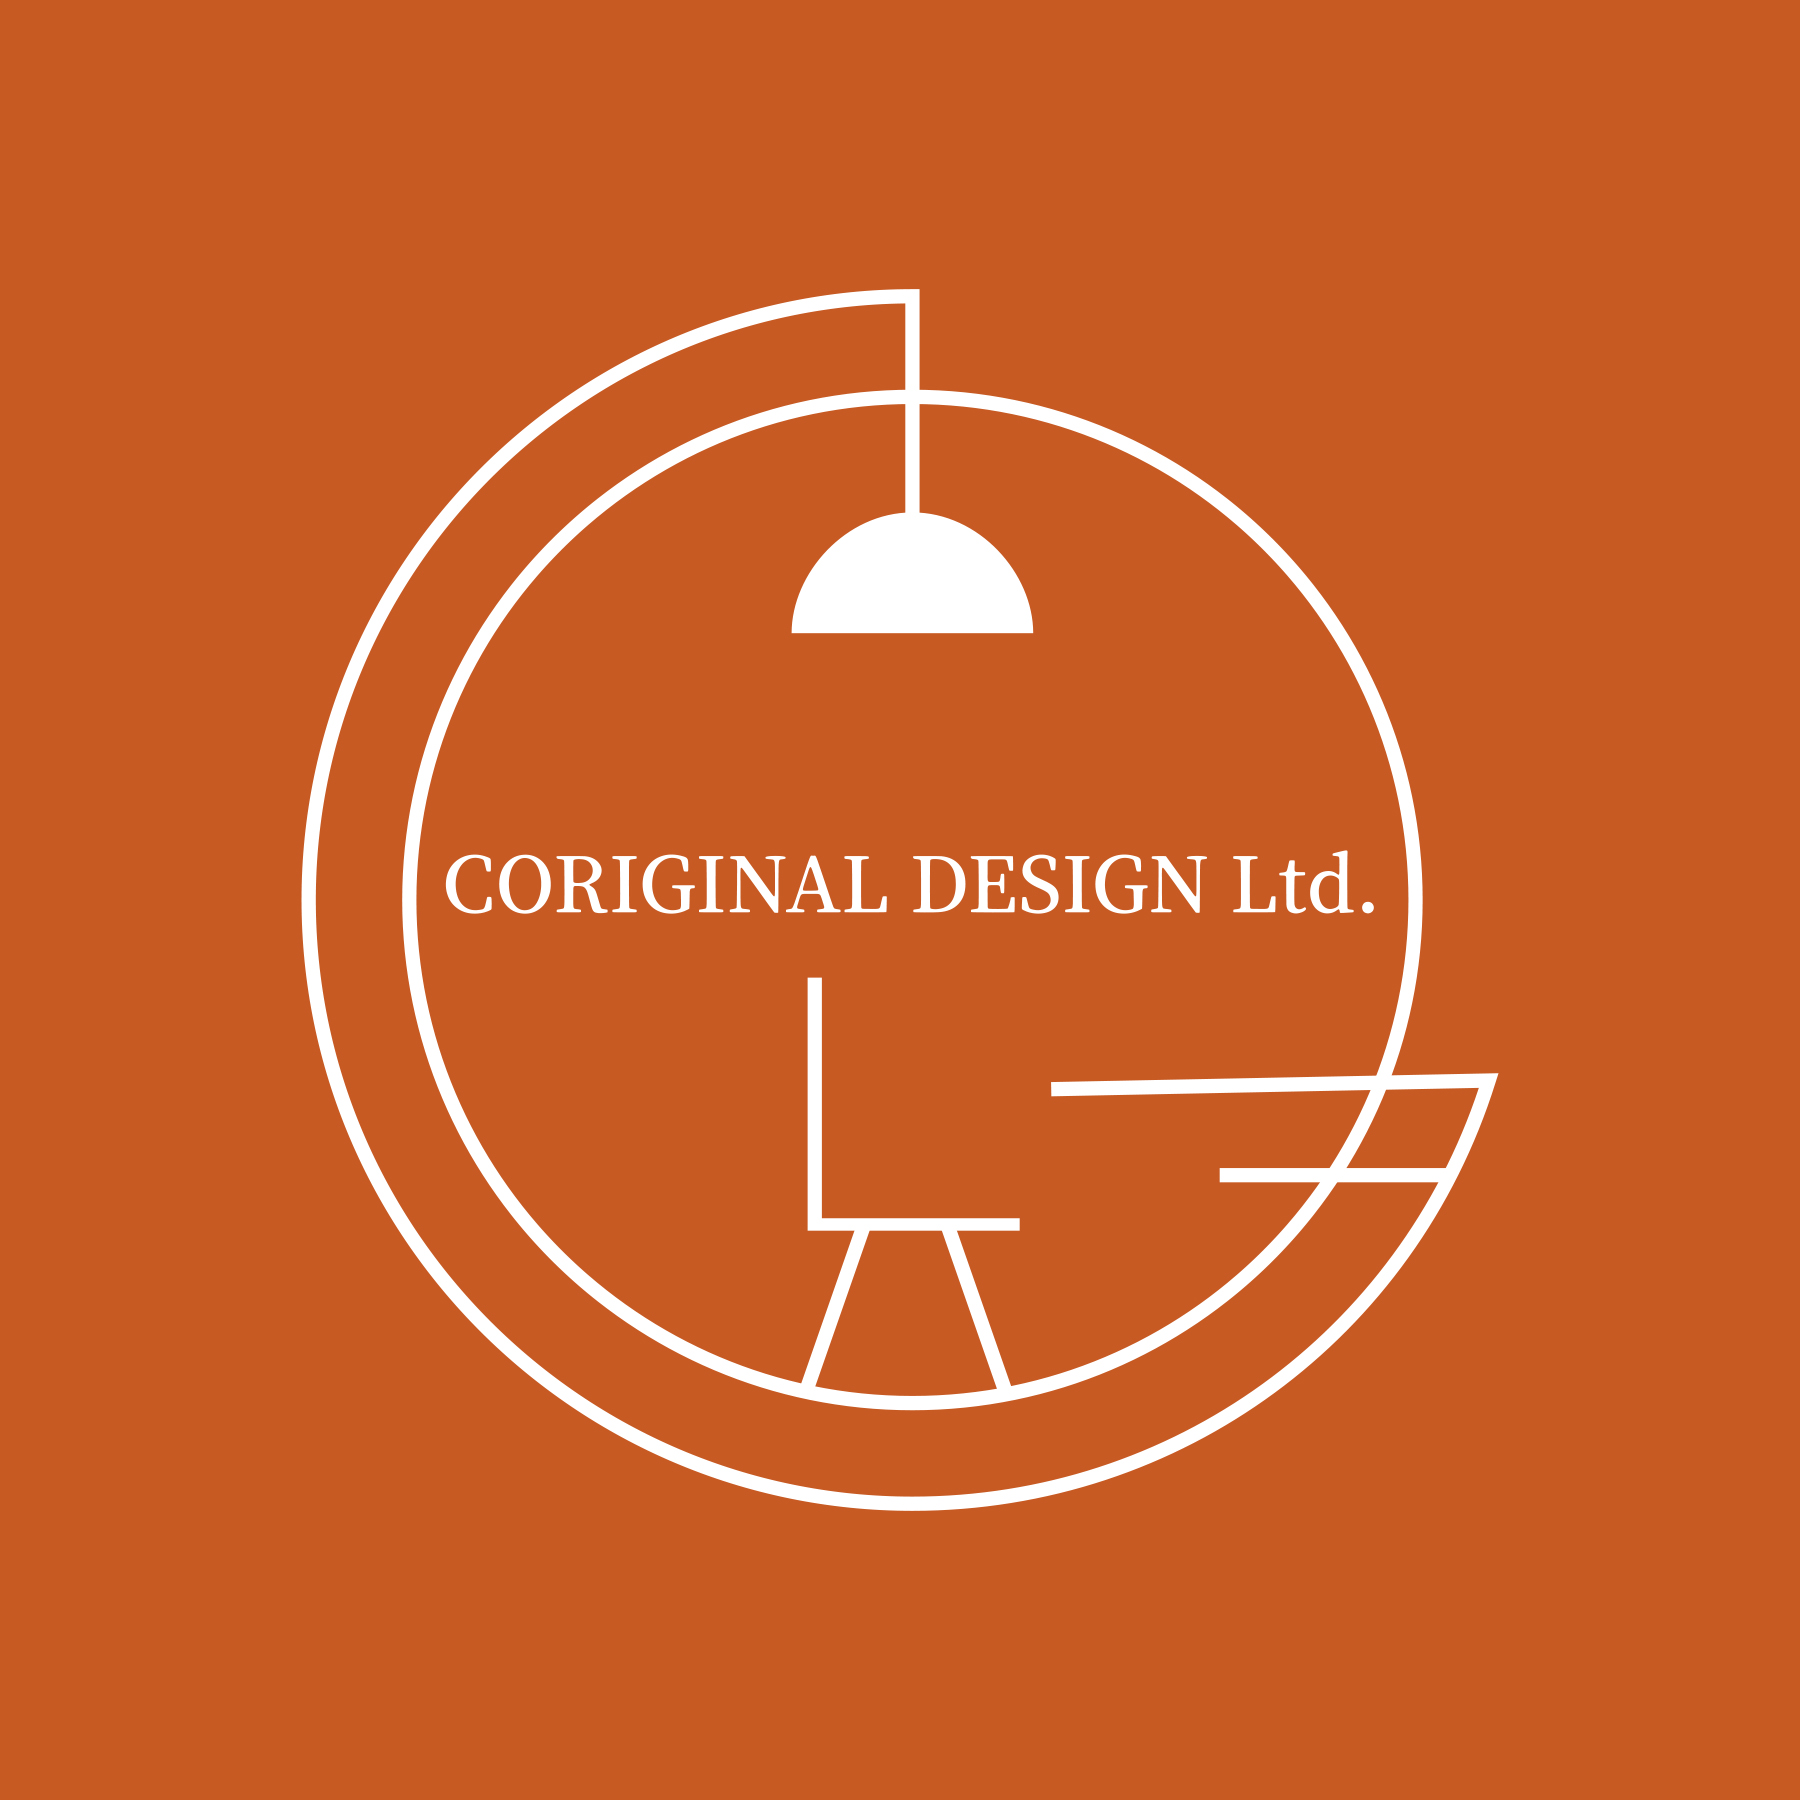 CORIGINAL DESIGN Ltd.